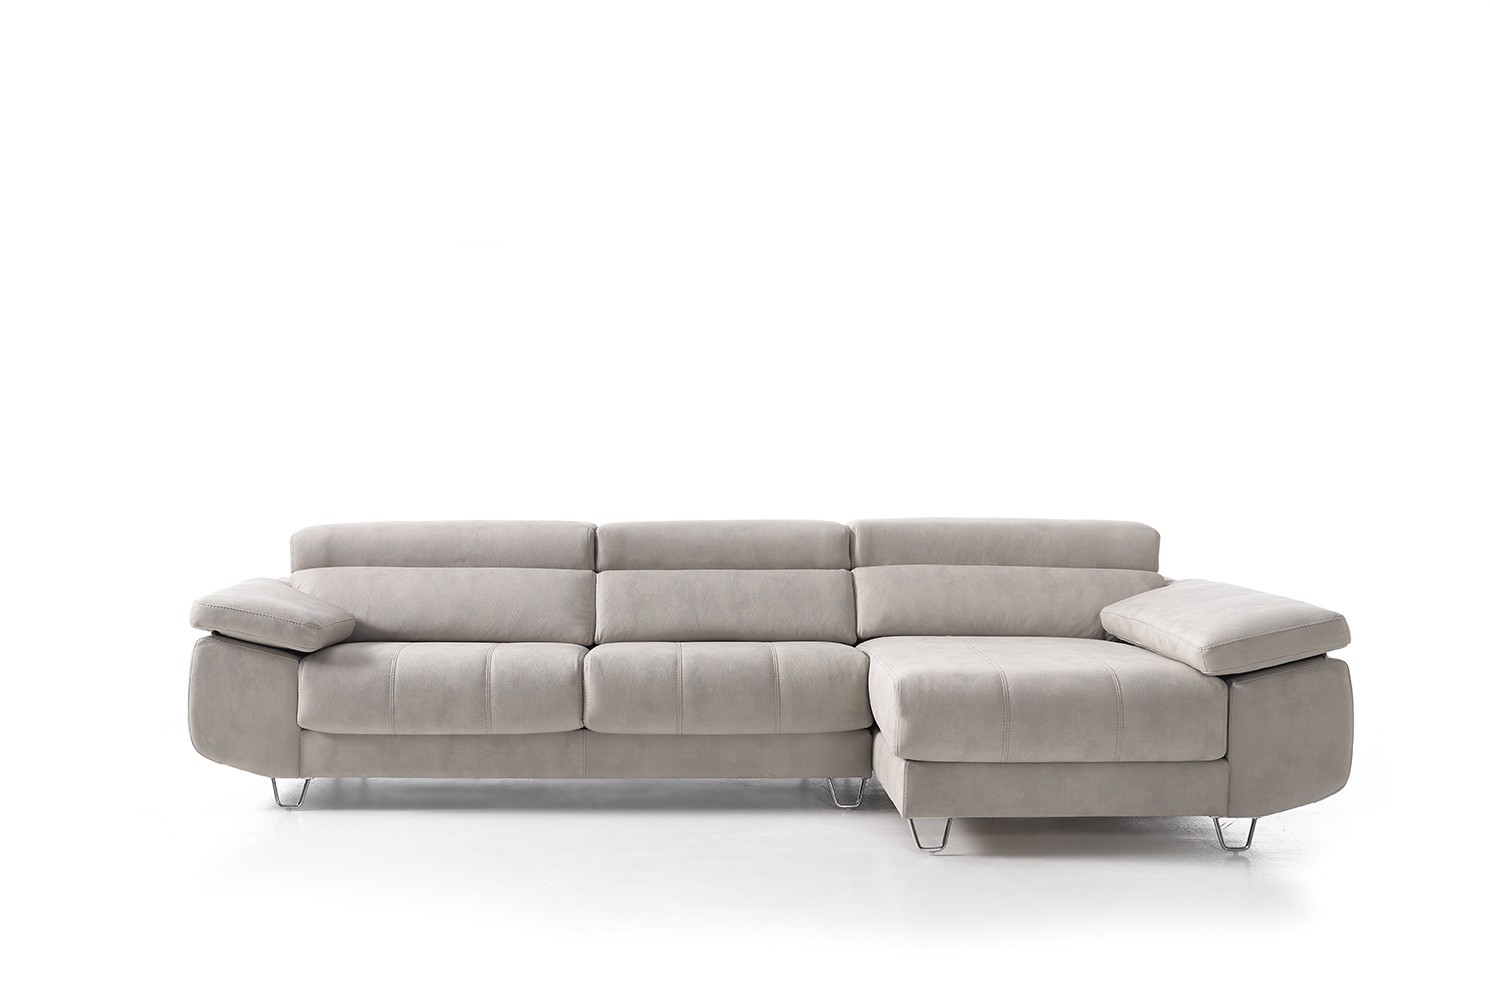 Sofagrup sofa Regina Chaise de tres plazas mozart light grey